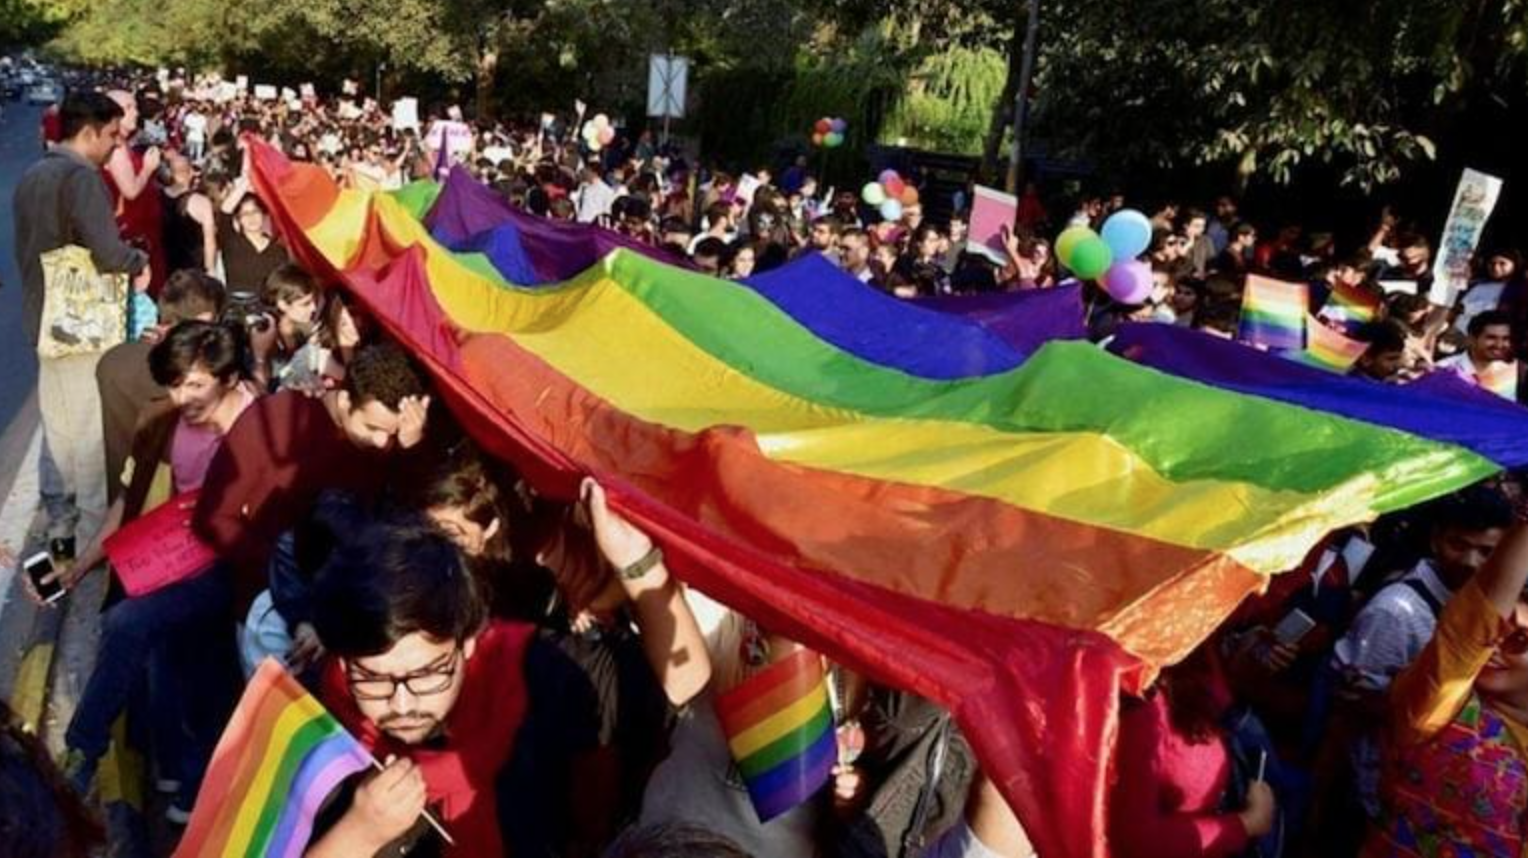 DAL MONDO - Corte Suprema India: matrimoni gay incompatibili con tradizione ed identità indiana 1